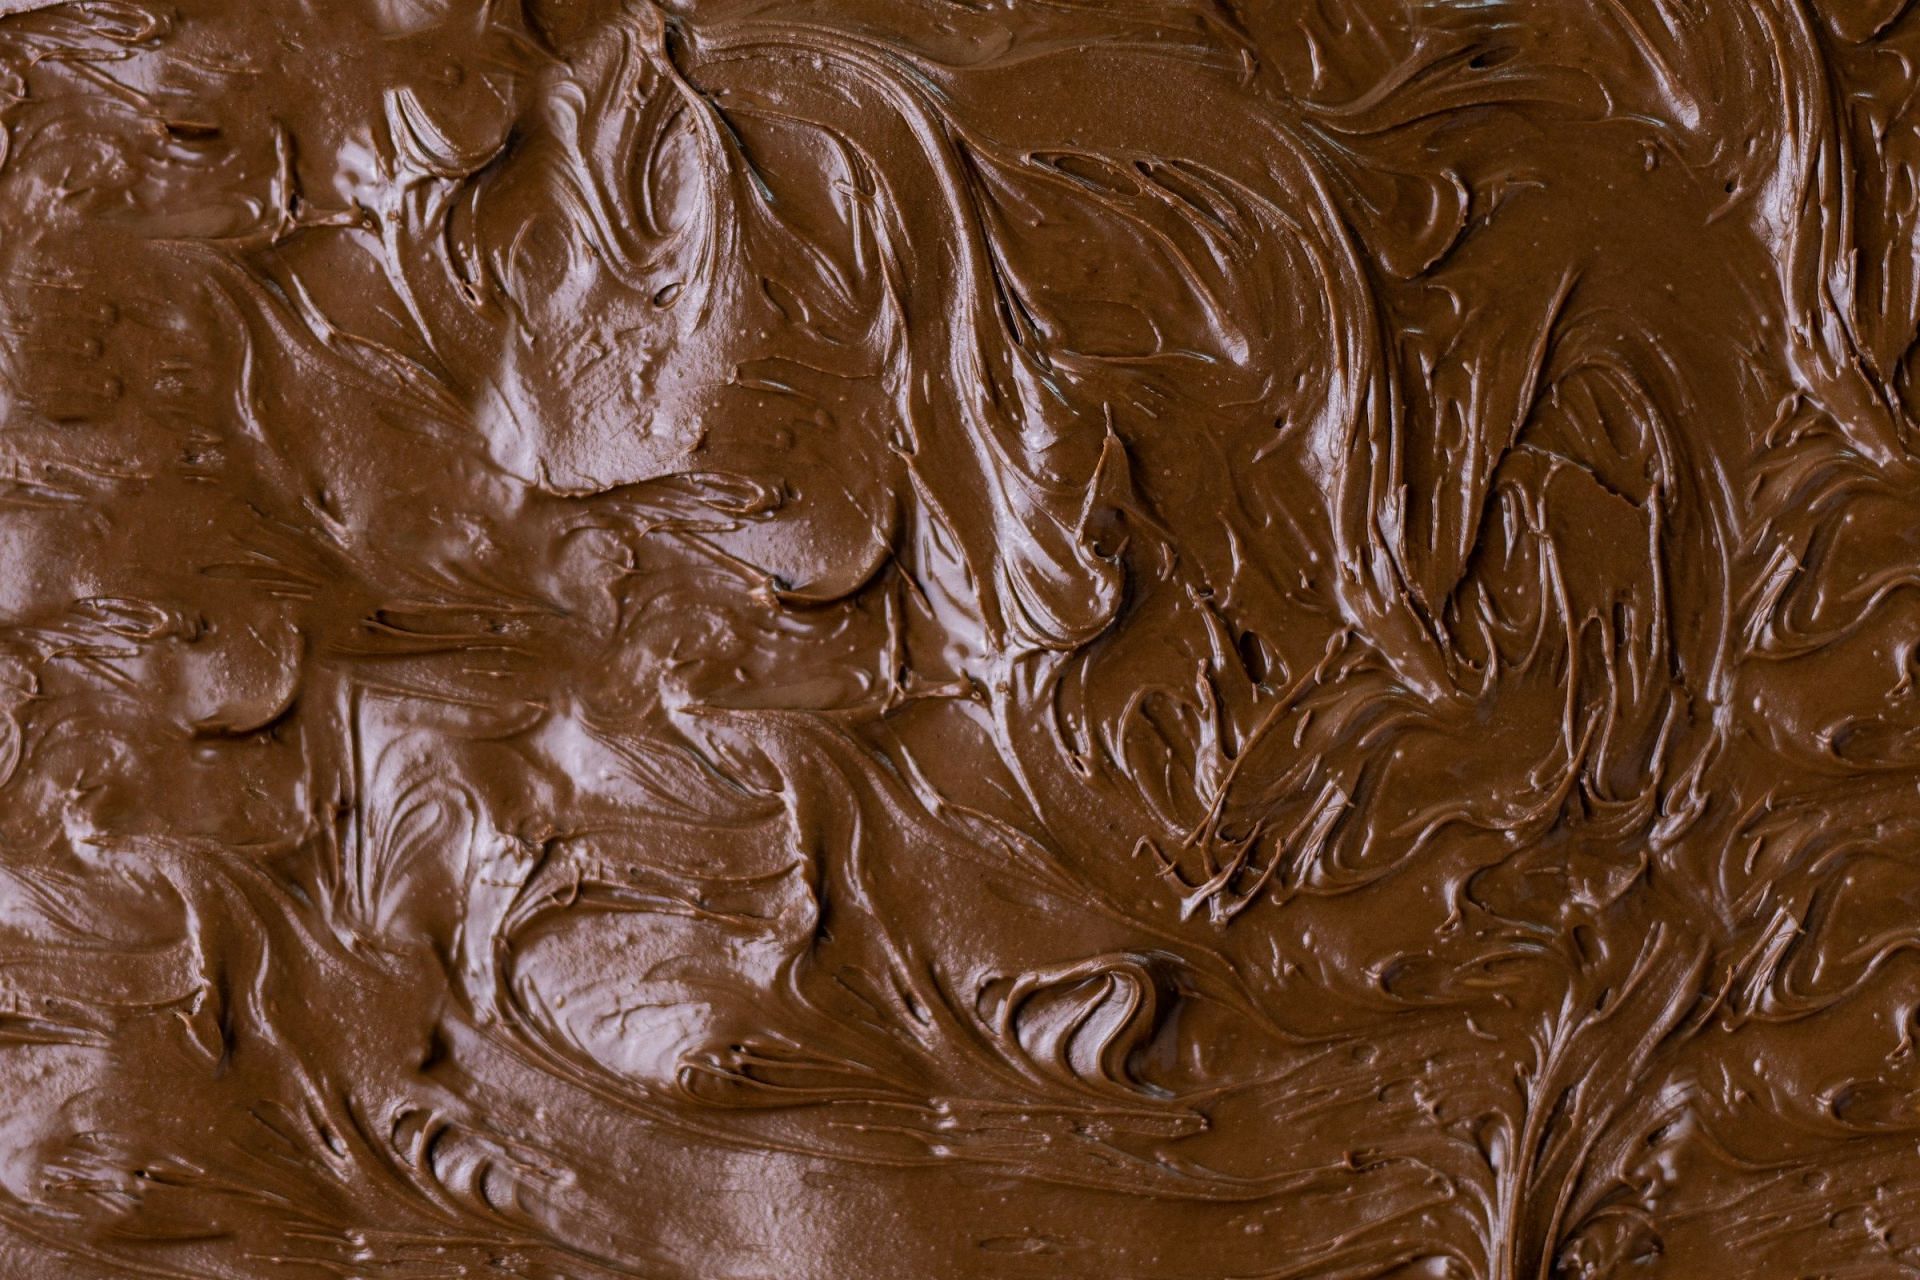 Chocolate (Image via Unsplash/Kaffee Meister)